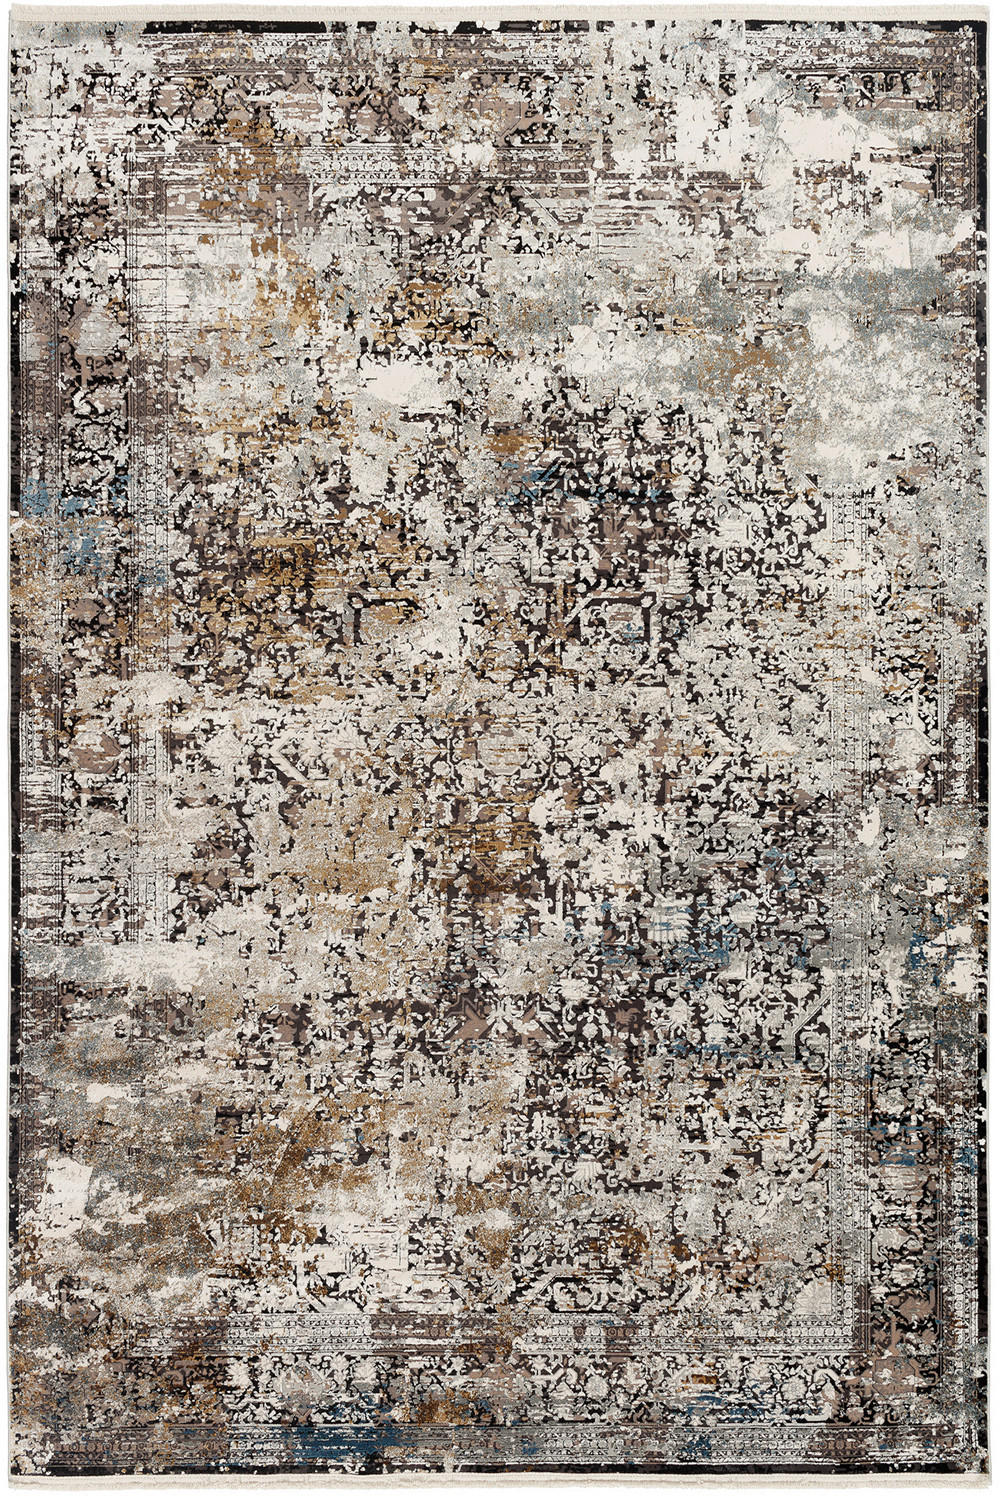 WEBTEPPICH  120/180 cm  Grau, Multicolor   - Multicolor/Grau, Design, Textil (120/180cm) - Dieter Knoll